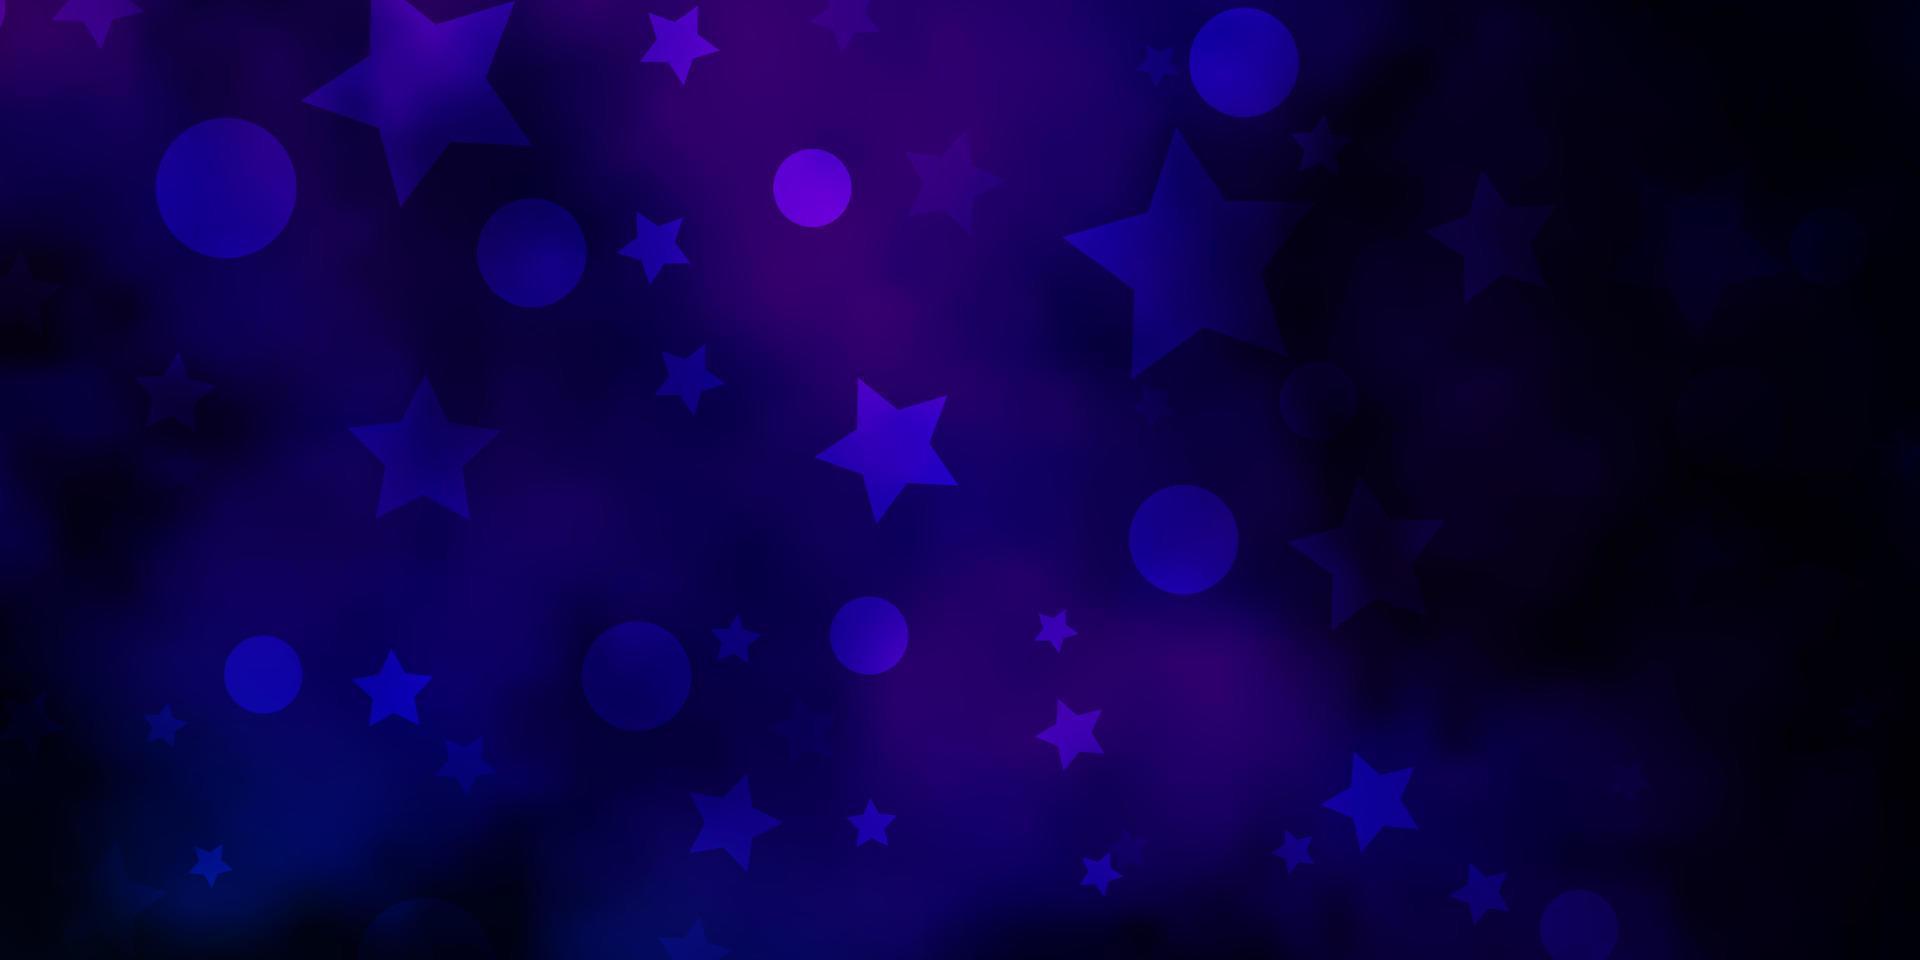 mörkrosa, blå vektormall med cirklar, stjärnor. vektor